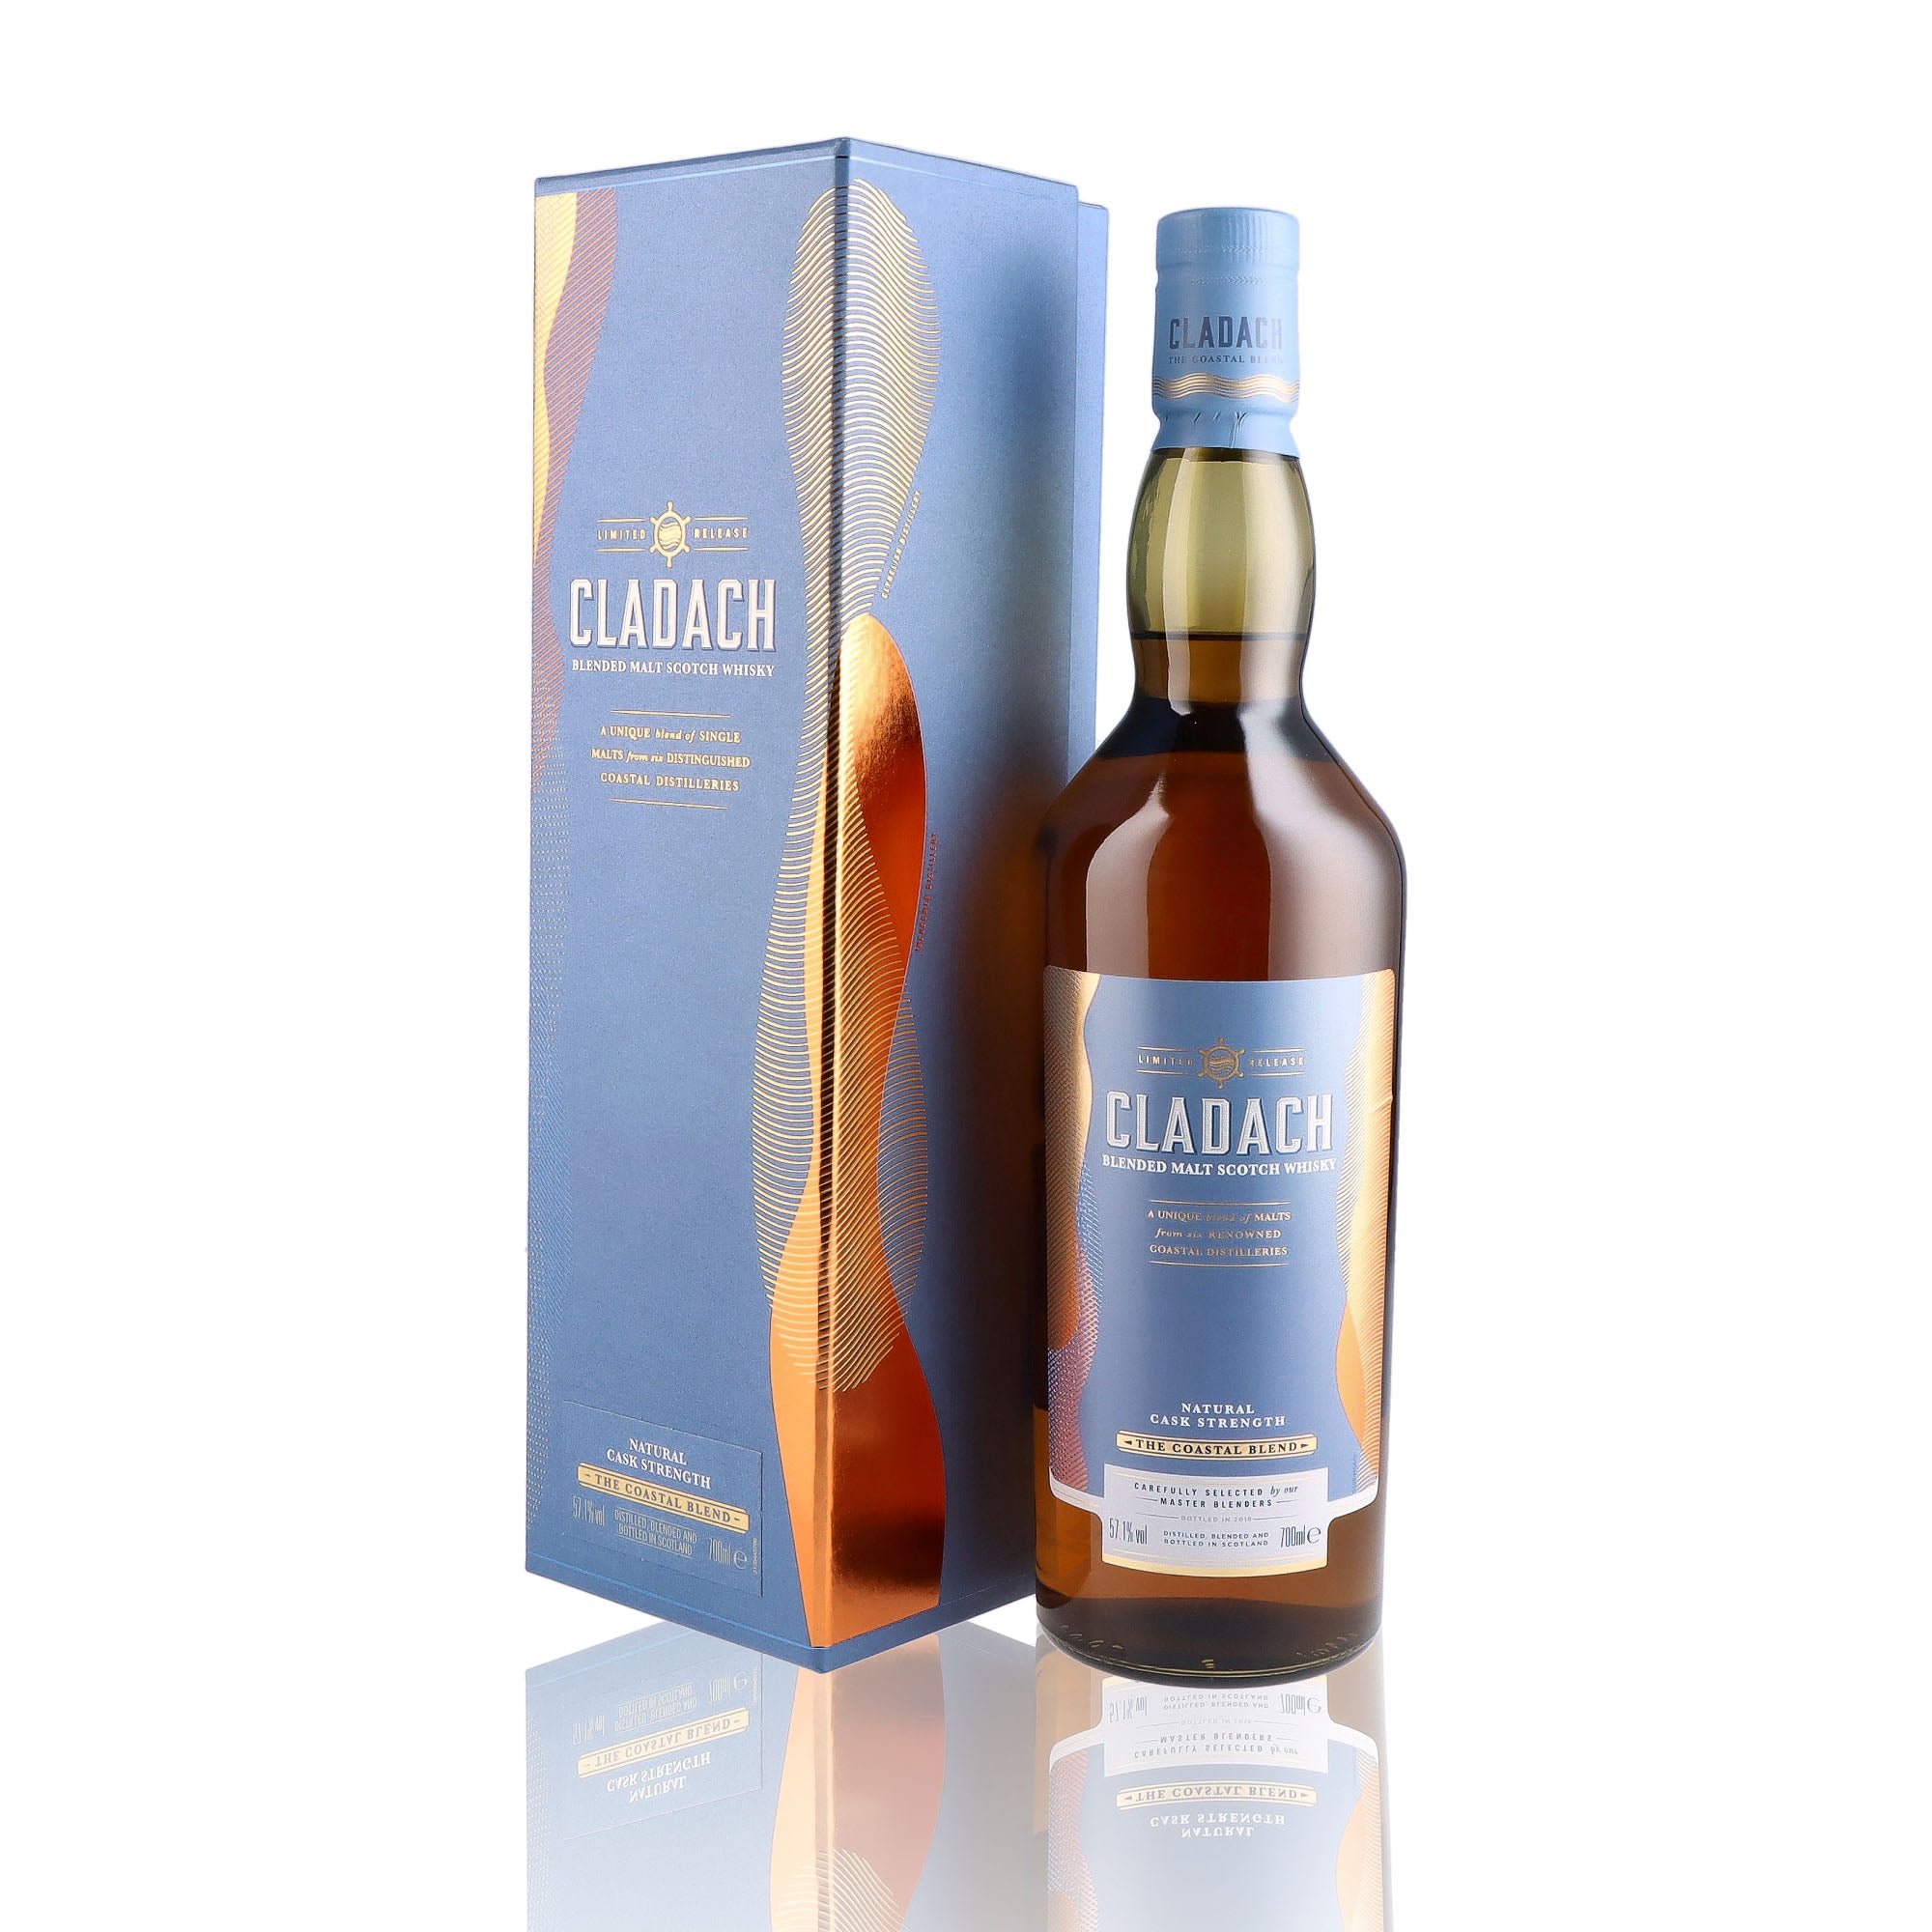 Une bouteille de Scotch Whisky Blends de la marque Cladach